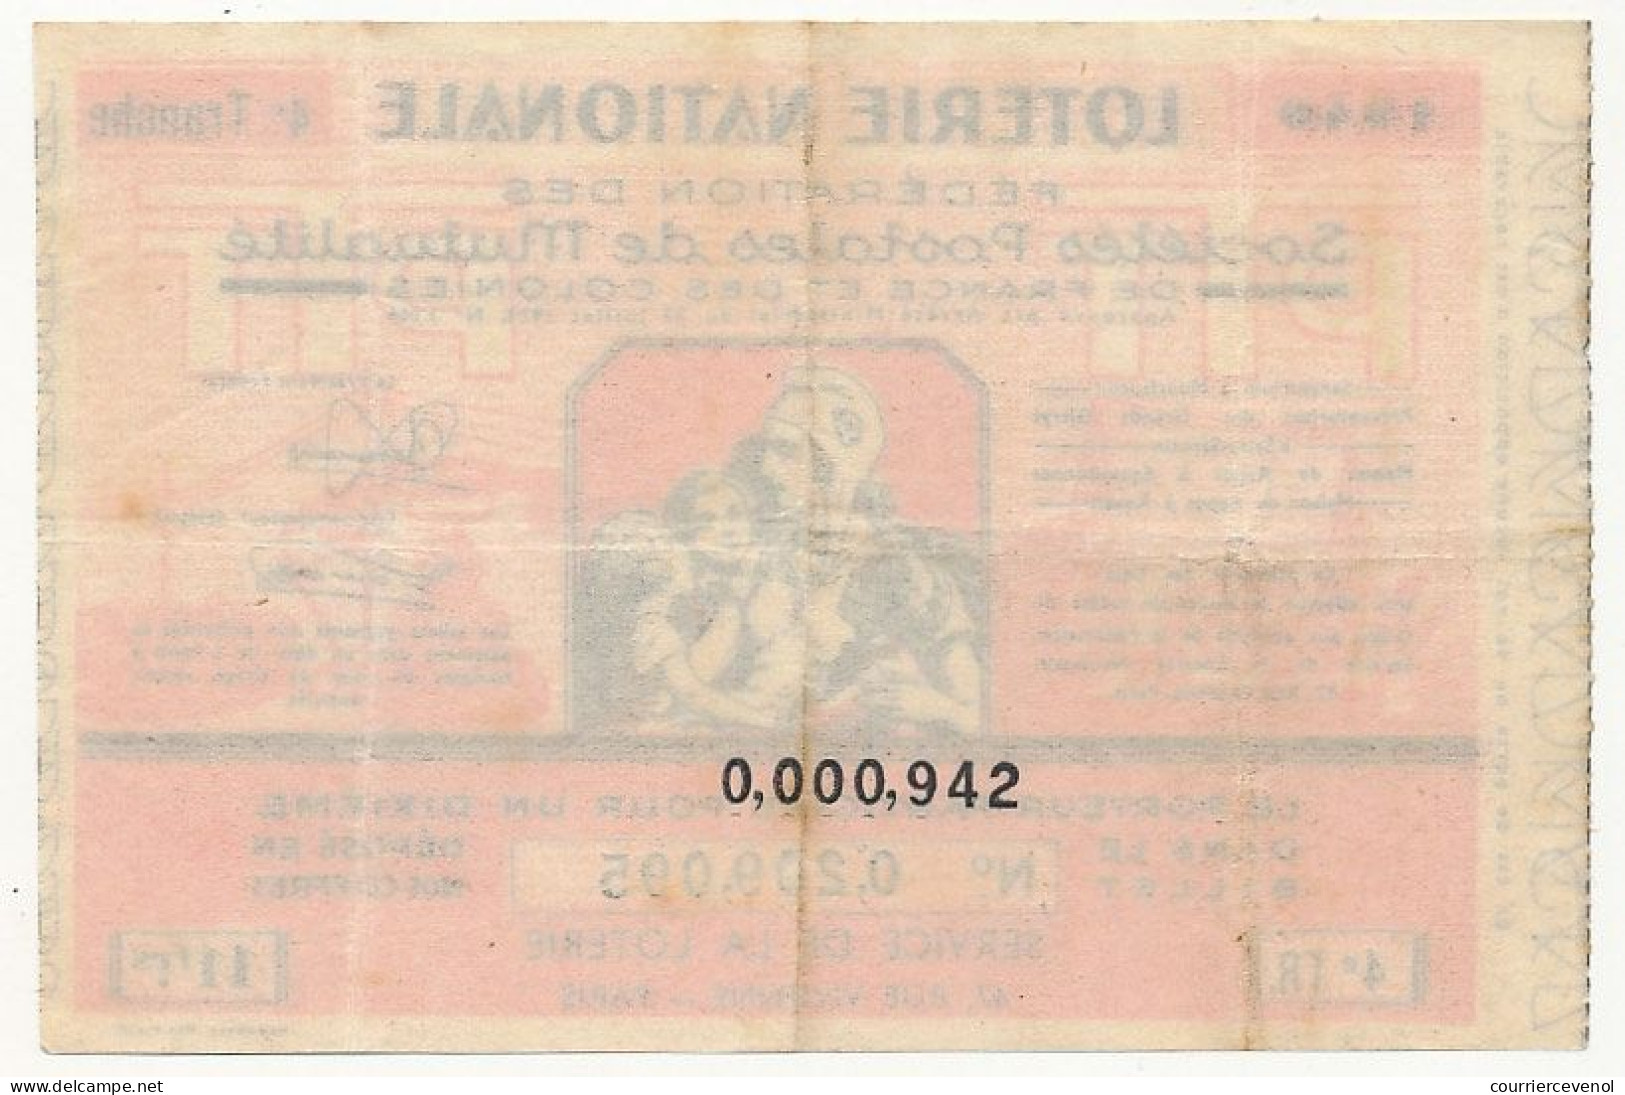 FRANCE - Loterie Nationale - Fédération Des Sociétés Postales De Mutualité - 1/10ème - 4ème Tranche 1940 - Lotterielose